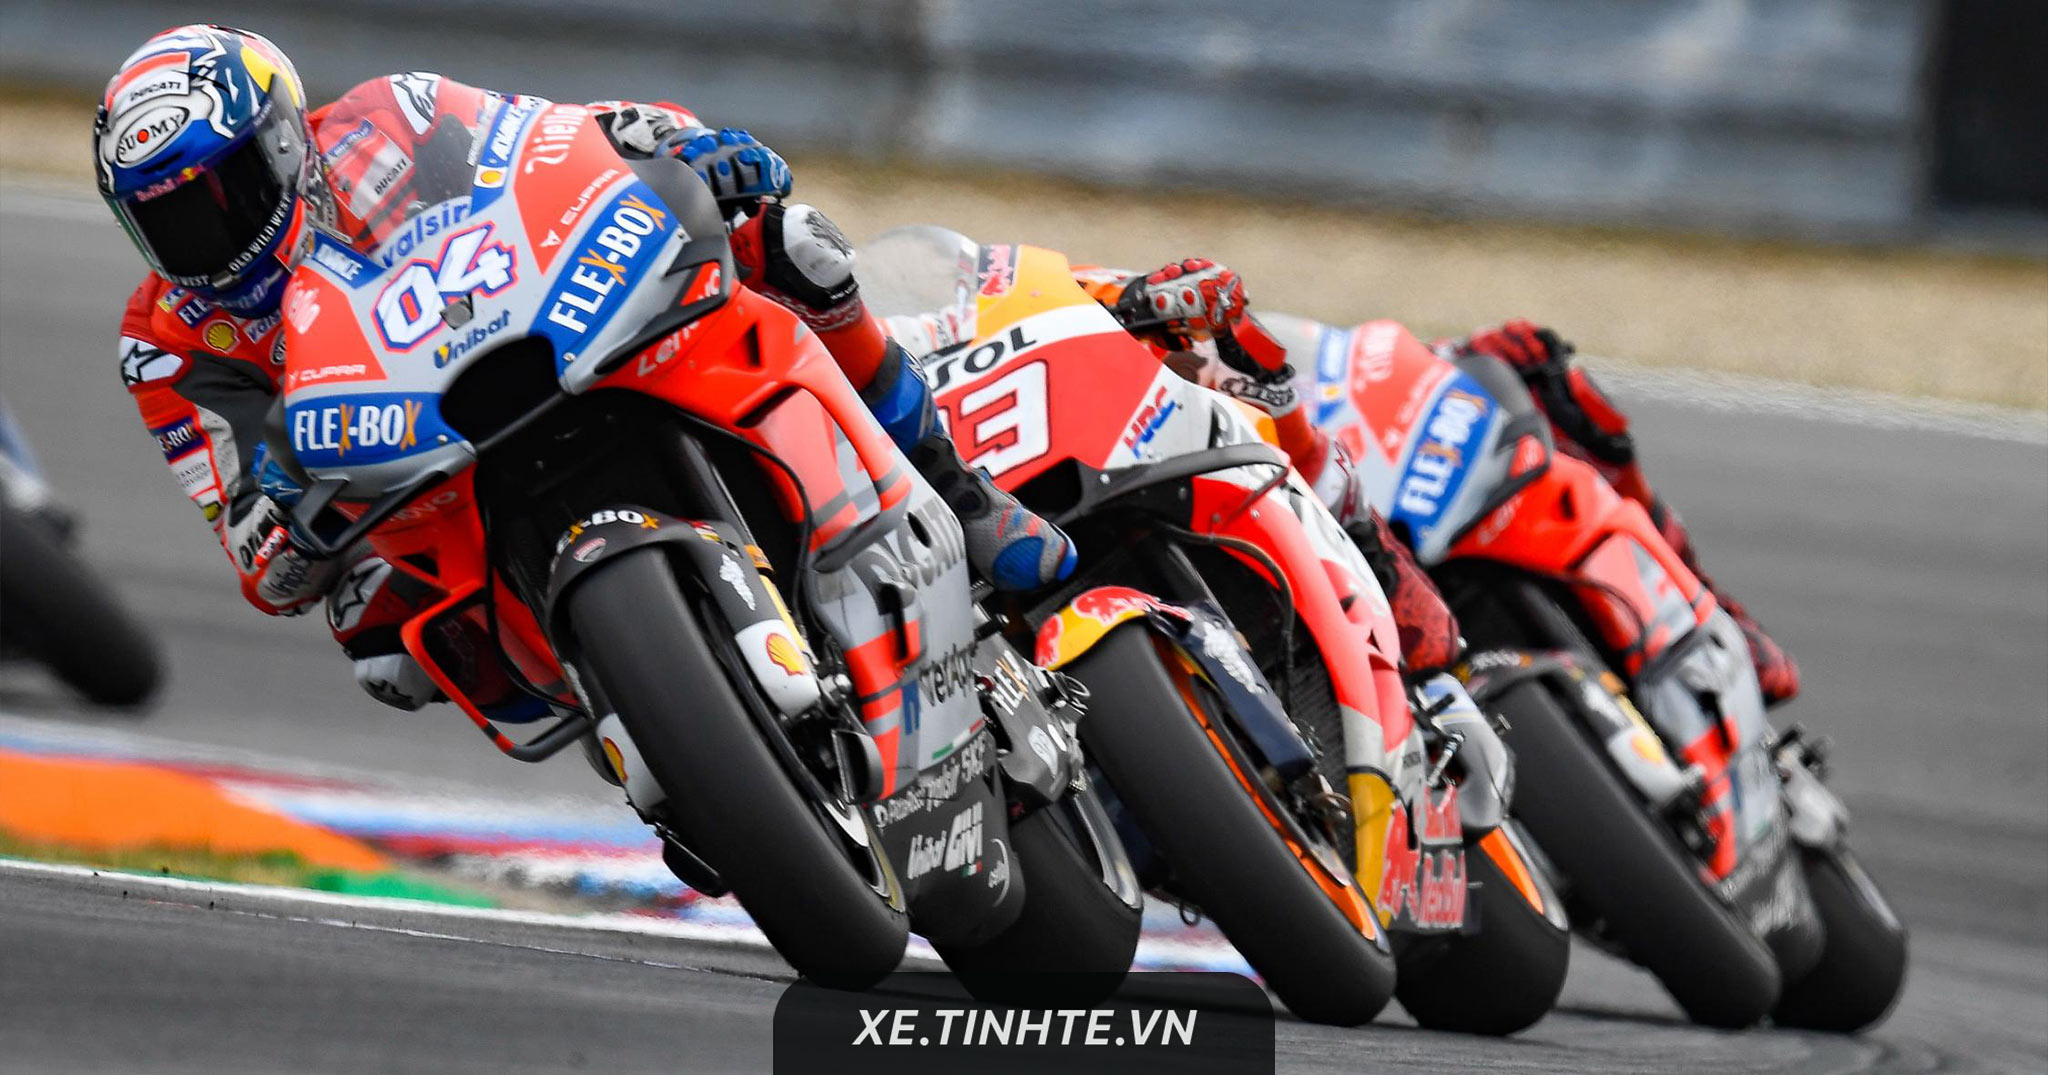 #MotoGP18: Chiến thắng sít sao Lorenzo và Marquez, Dovizioso về nhất tại Czech GP